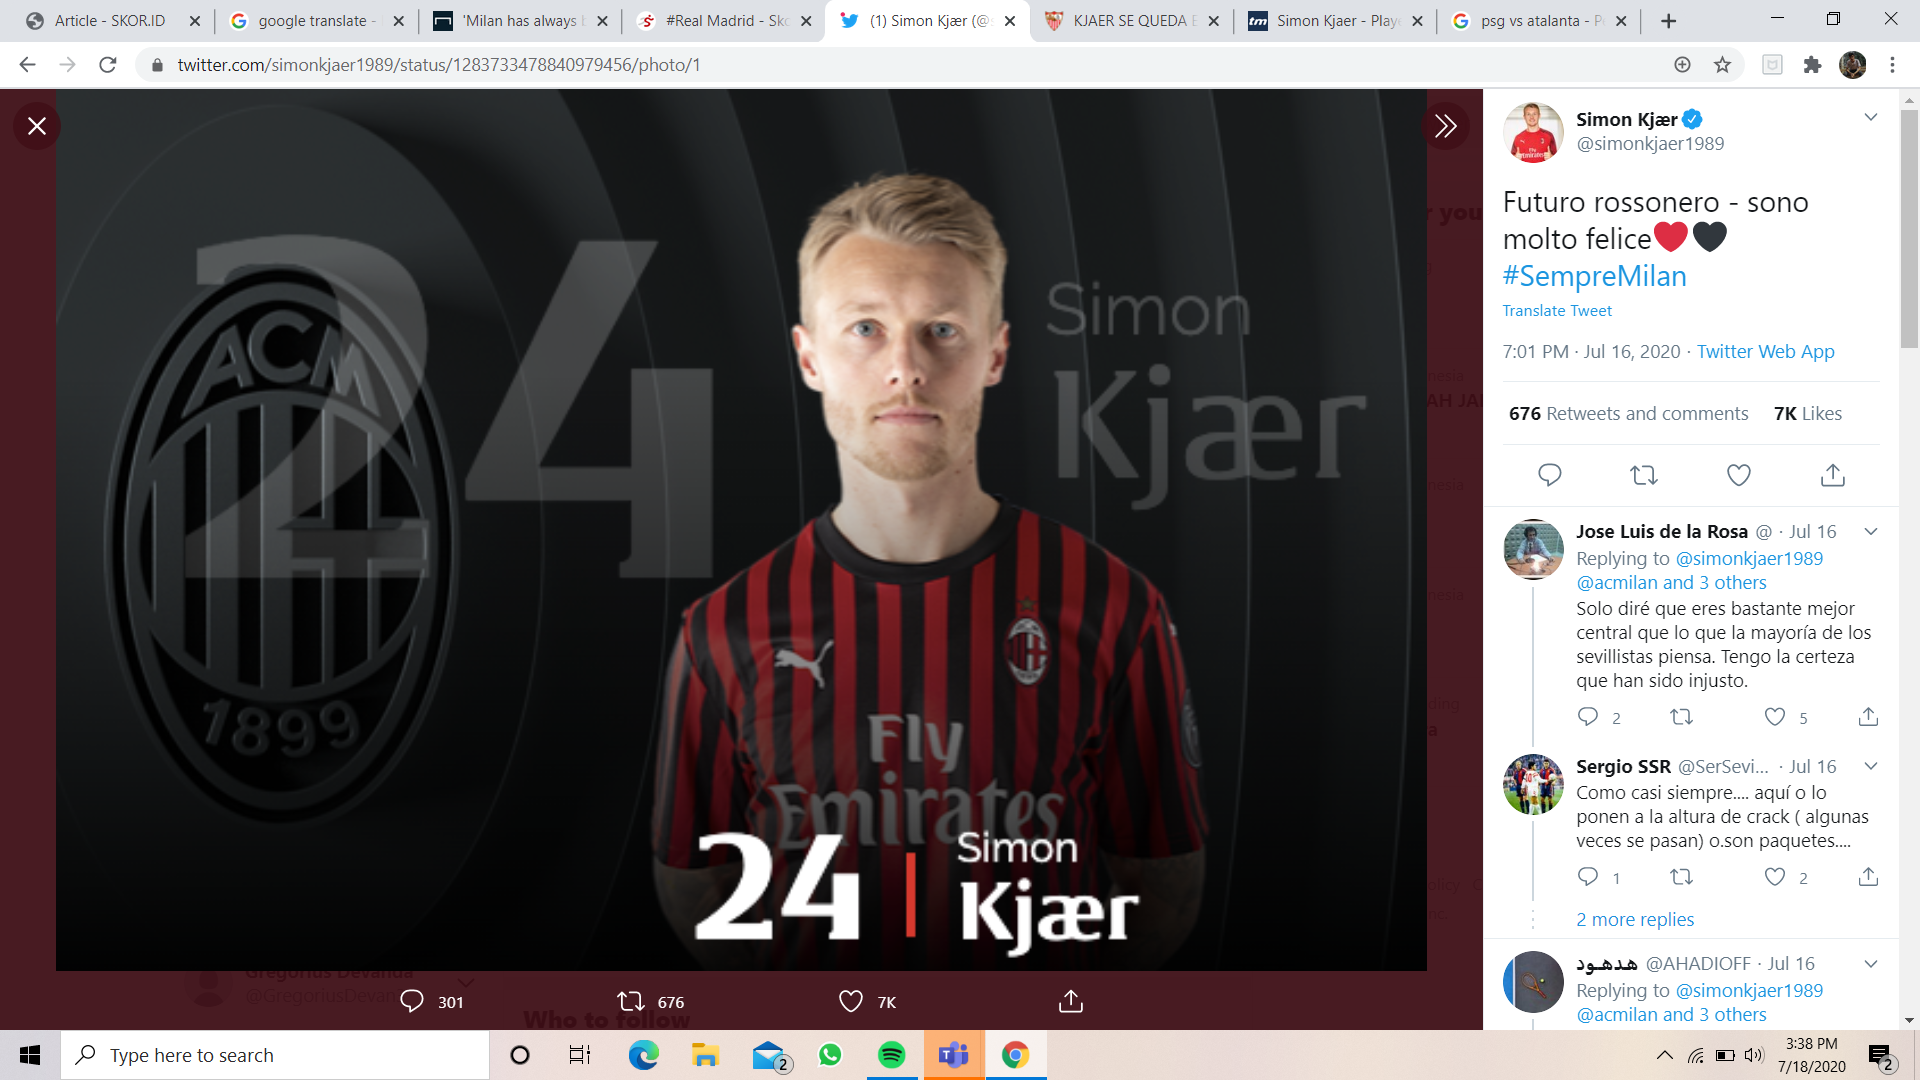 Rezeki AC Milan: Rekrut Simon Kjaer, Masih Dapat Untung dari Suso